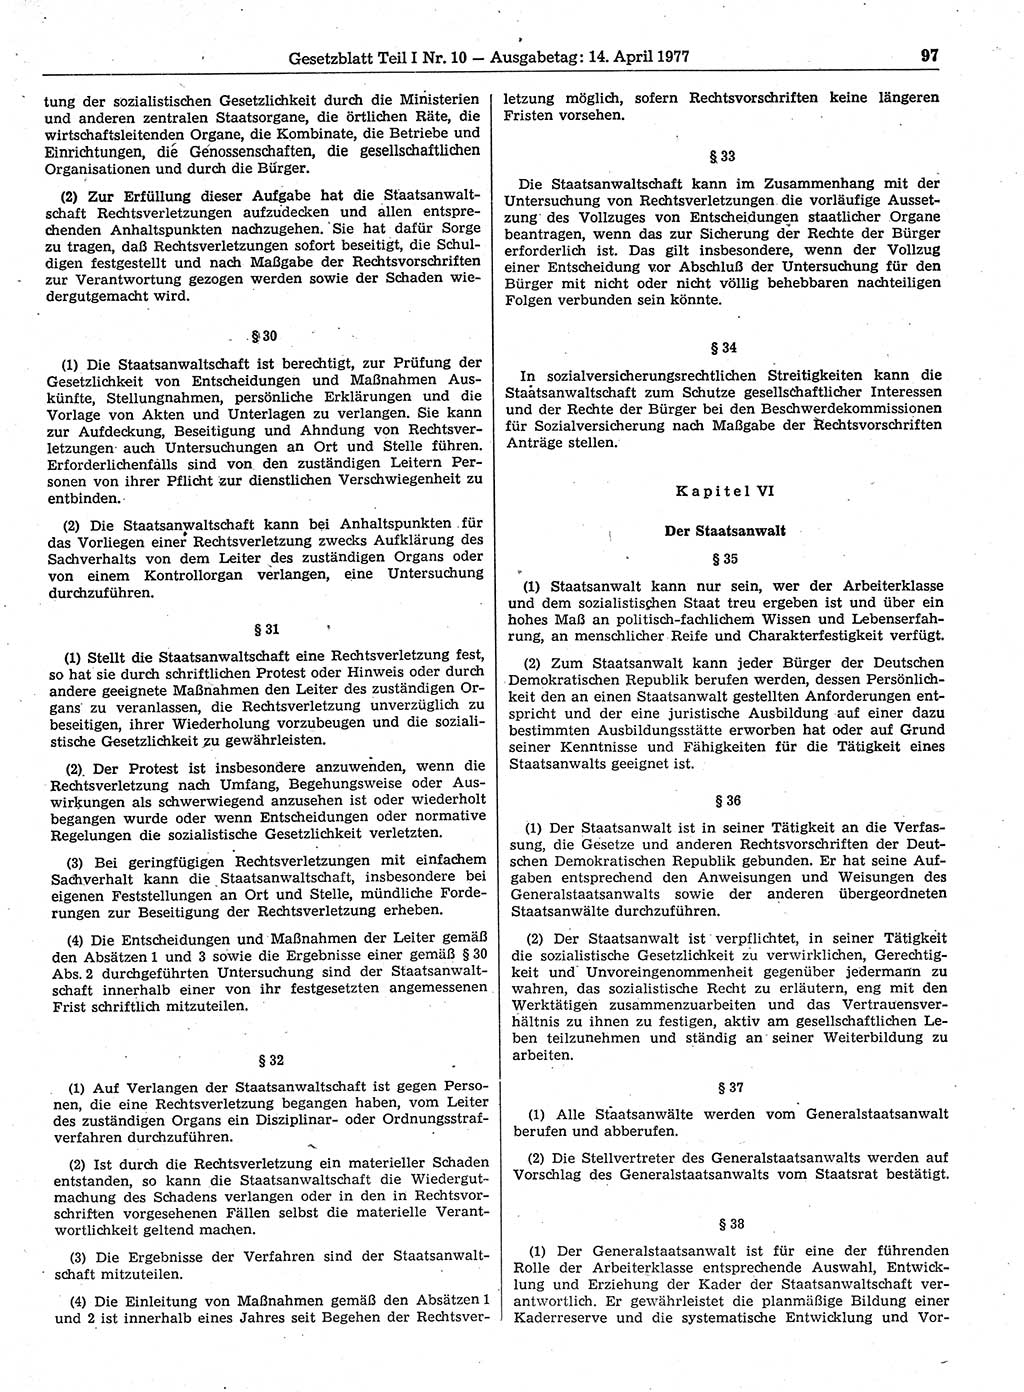 Gesetzblatt (GBl.) der Deutschen Demokratischen Republik (DDR) Teil Ⅰ 1977, Seite 97 (GBl. DDR Ⅰ 1977, S. 97)